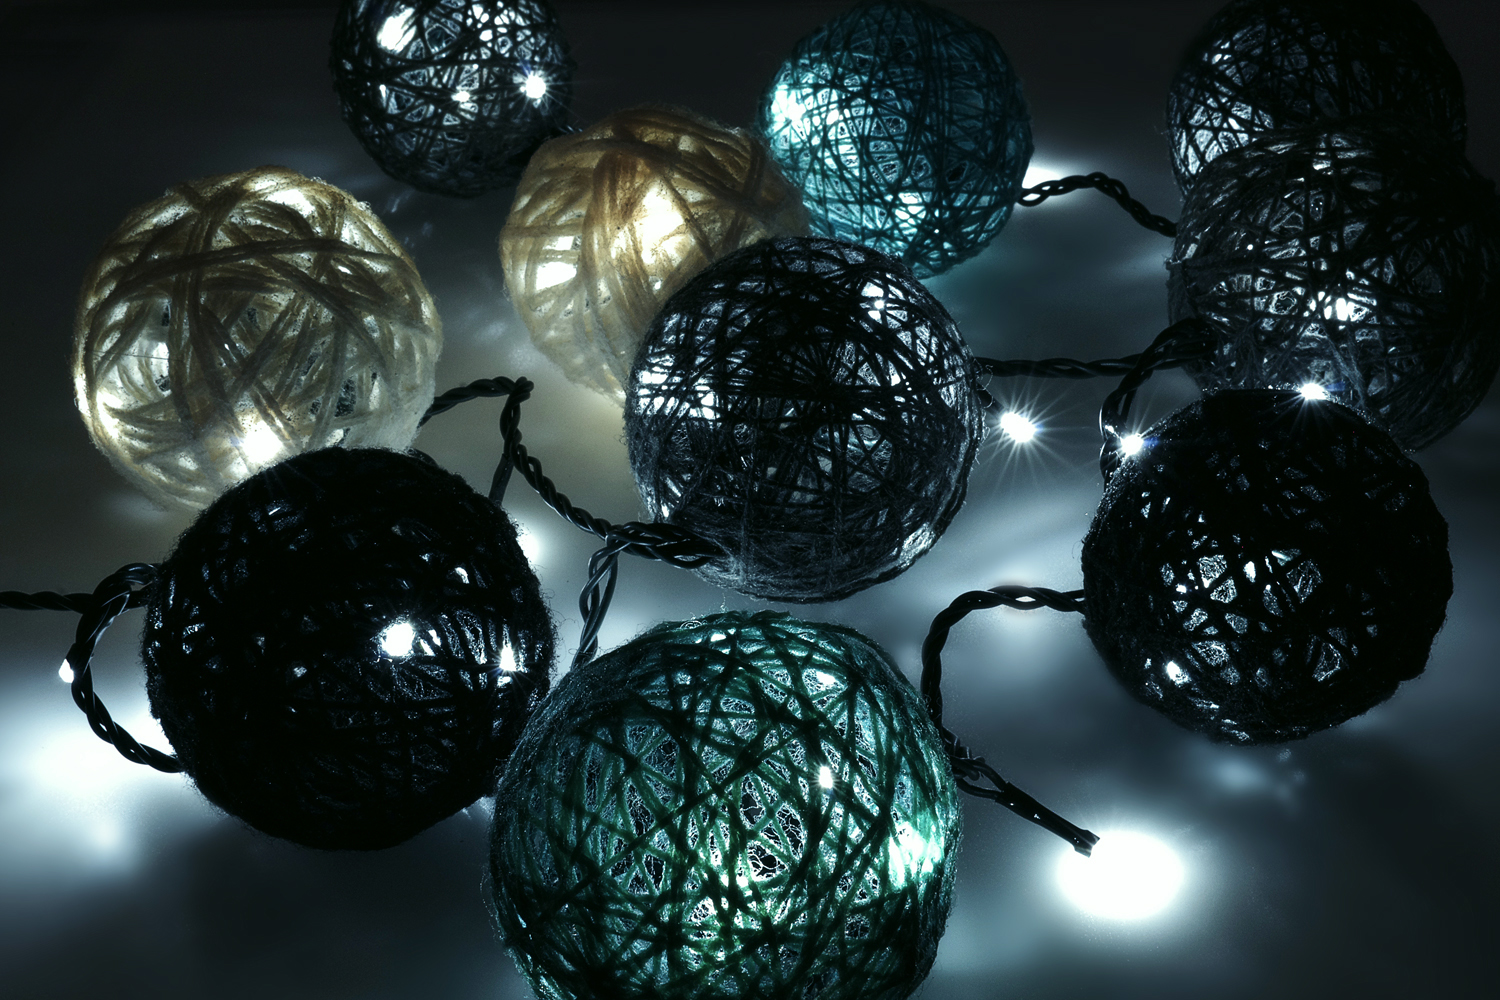 /w/e/weihnachtsbeleuchtung-lichterkette-kaltwei_-dekorationsvorschlag-02_3.jpg